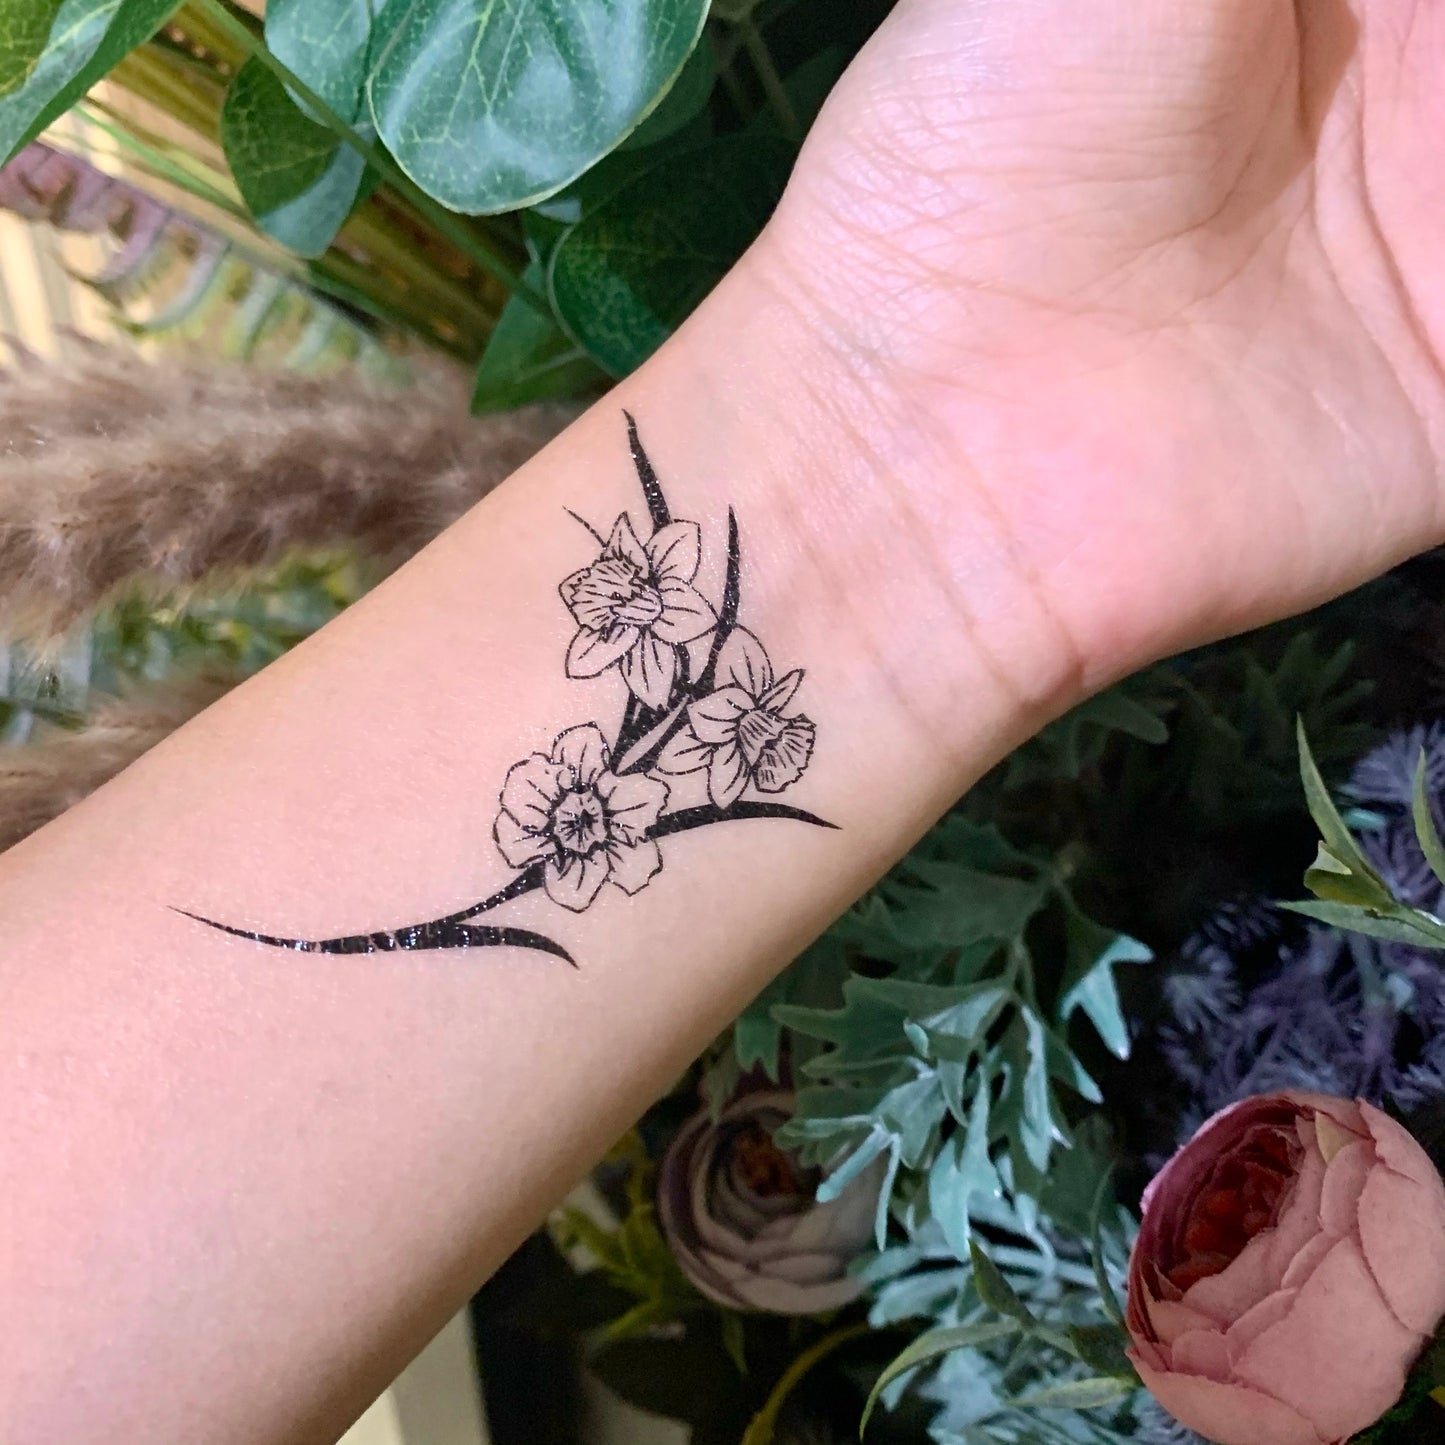 fake small daffodil cattleya hawthorn flower temporary tattoo sticker design idea on wrist